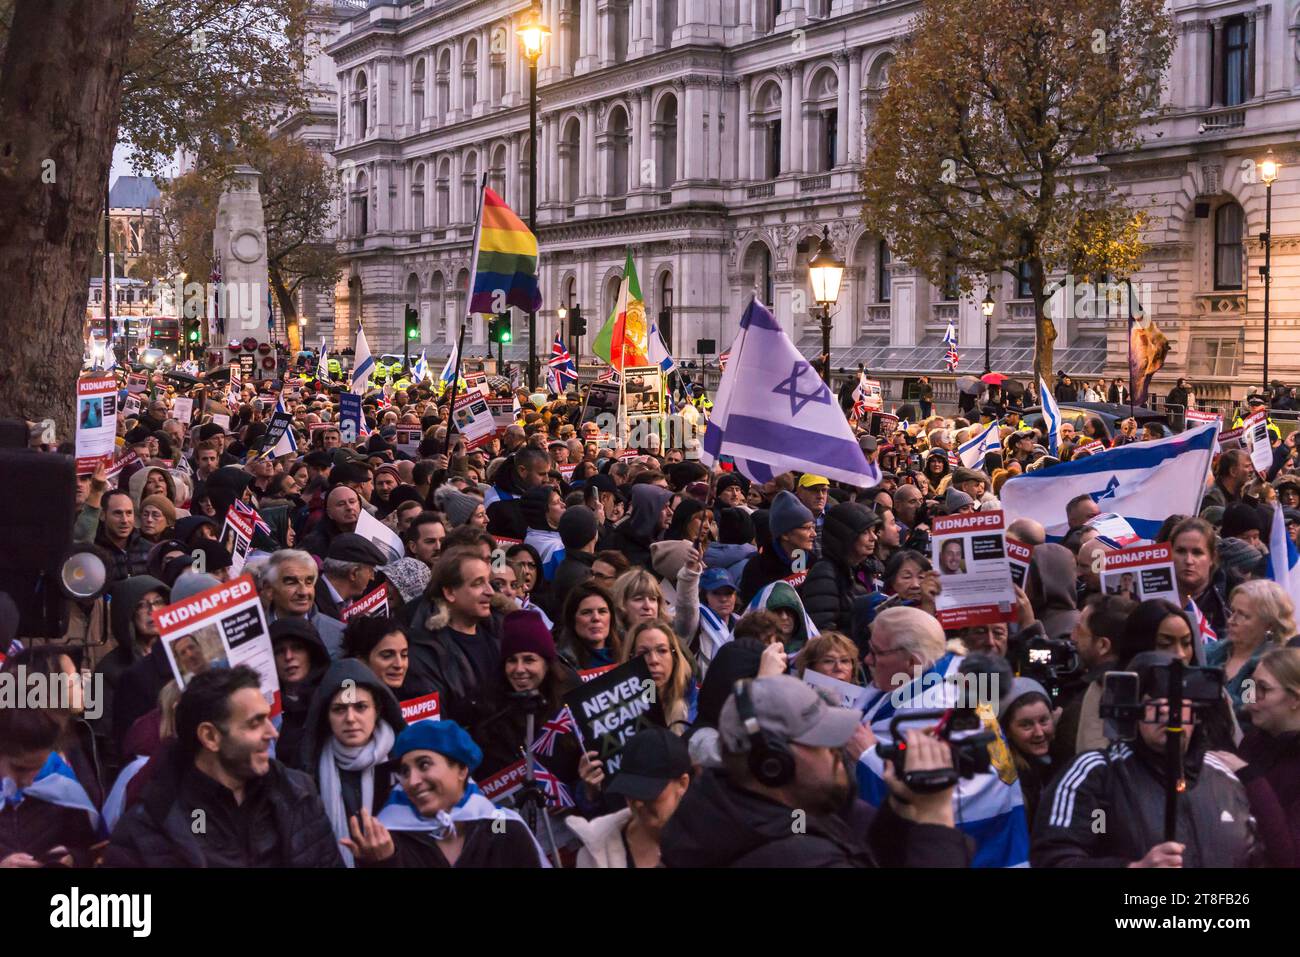 "Never Again is Now" ist eine Gebets- und Protestveranstaltung in Whitehall, um Solidarität mit dem jüdischen Volk auszudrücken und sich gegen Antisemitismus zu wehren. Stockfoto